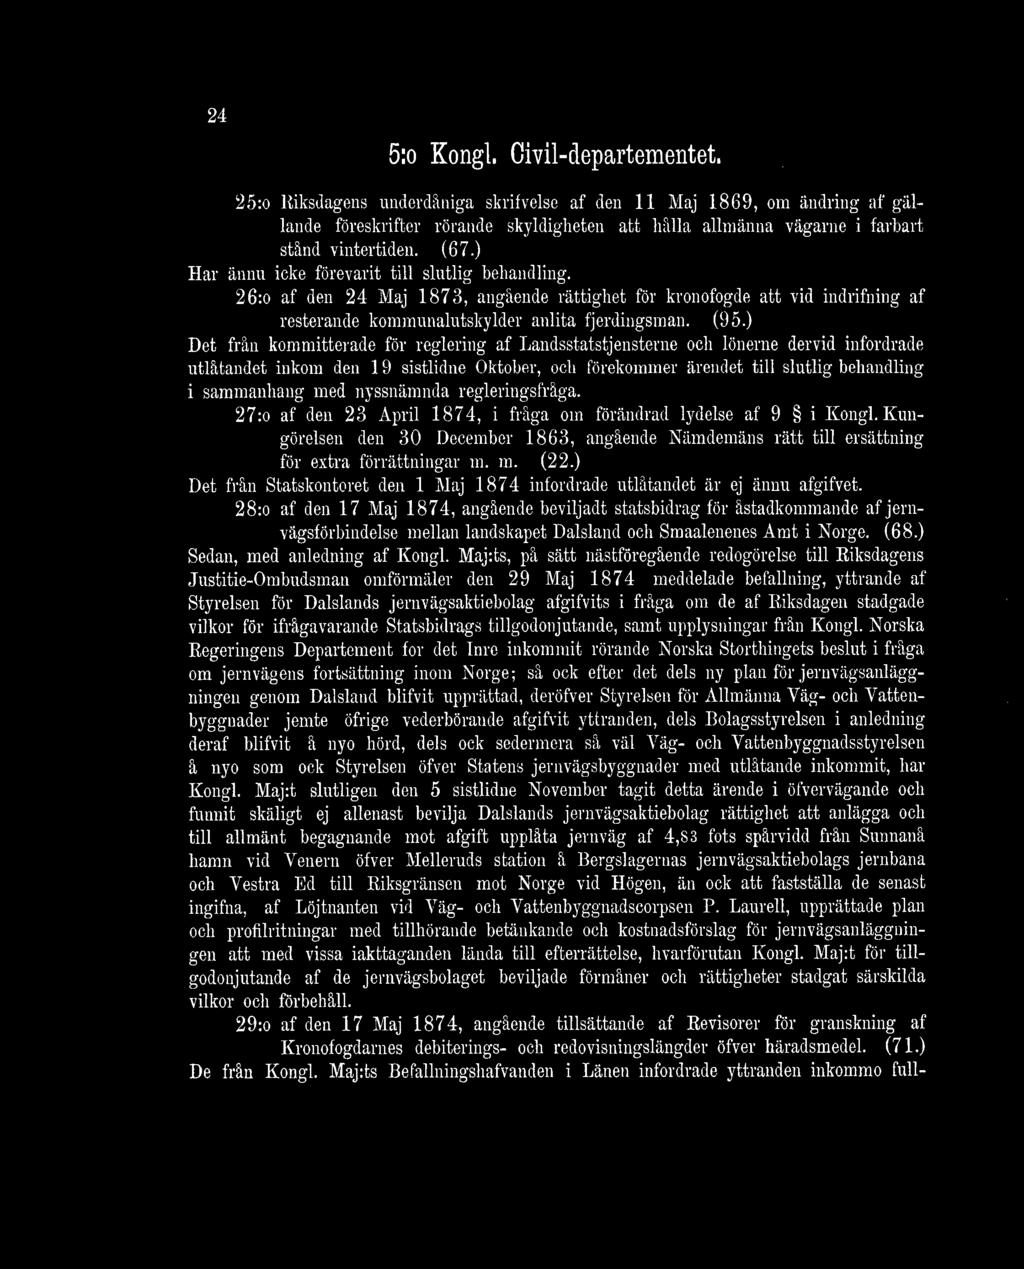 26:o af den 24 Maj 1873, angående rättighet för kronofogde att vid indrifning af resterande kommunalutskylder anlita fjerdingsman. (95.